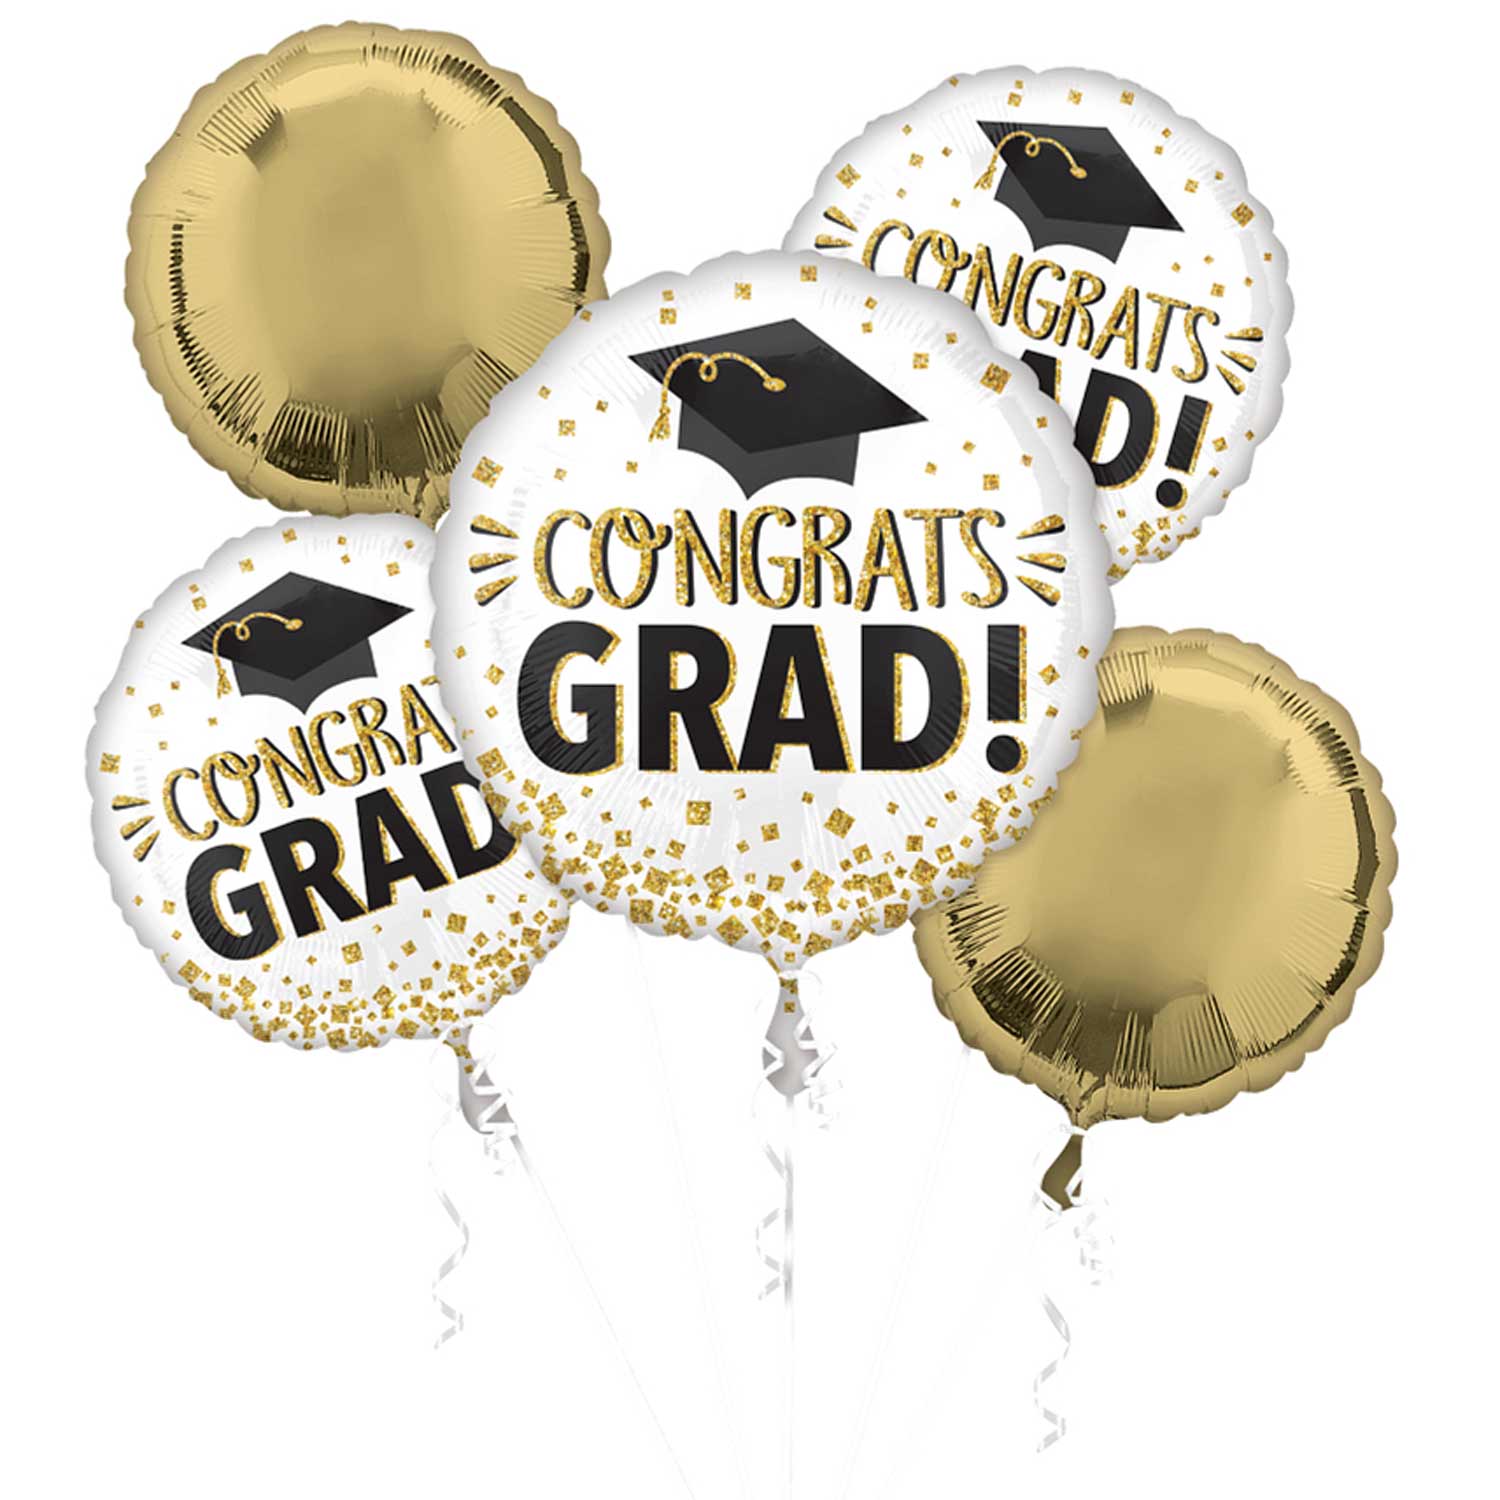 Congrats Grad Gold Glitter Balloon Bouquet, 5pcs